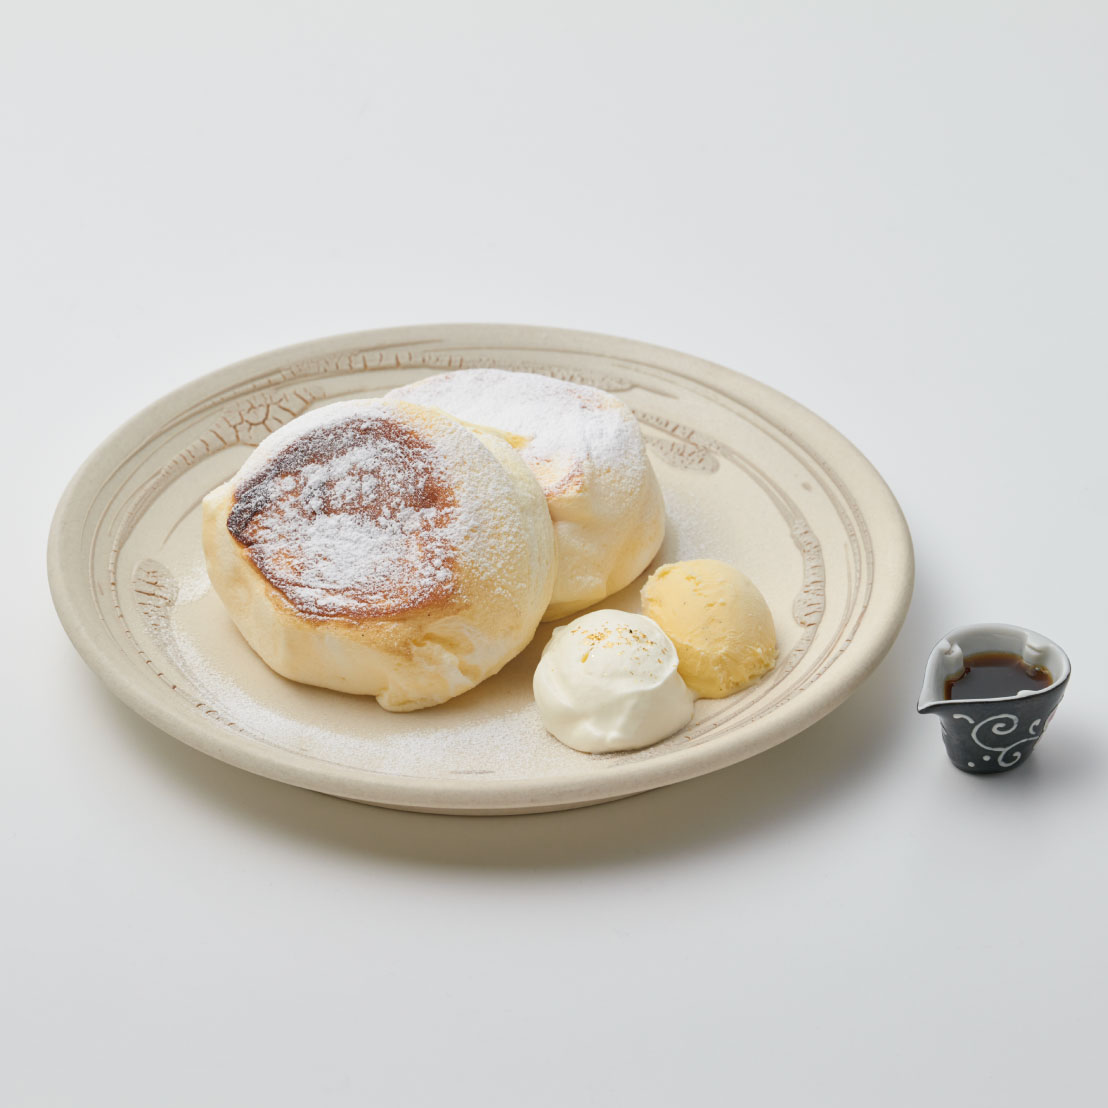 石川県産コシヒカリ米粉を使った「たもん」のパンケーキ<br><span>Tamon pancakes made with Ishikawa-grown Koshihikari rice flour</span><br>¥1150